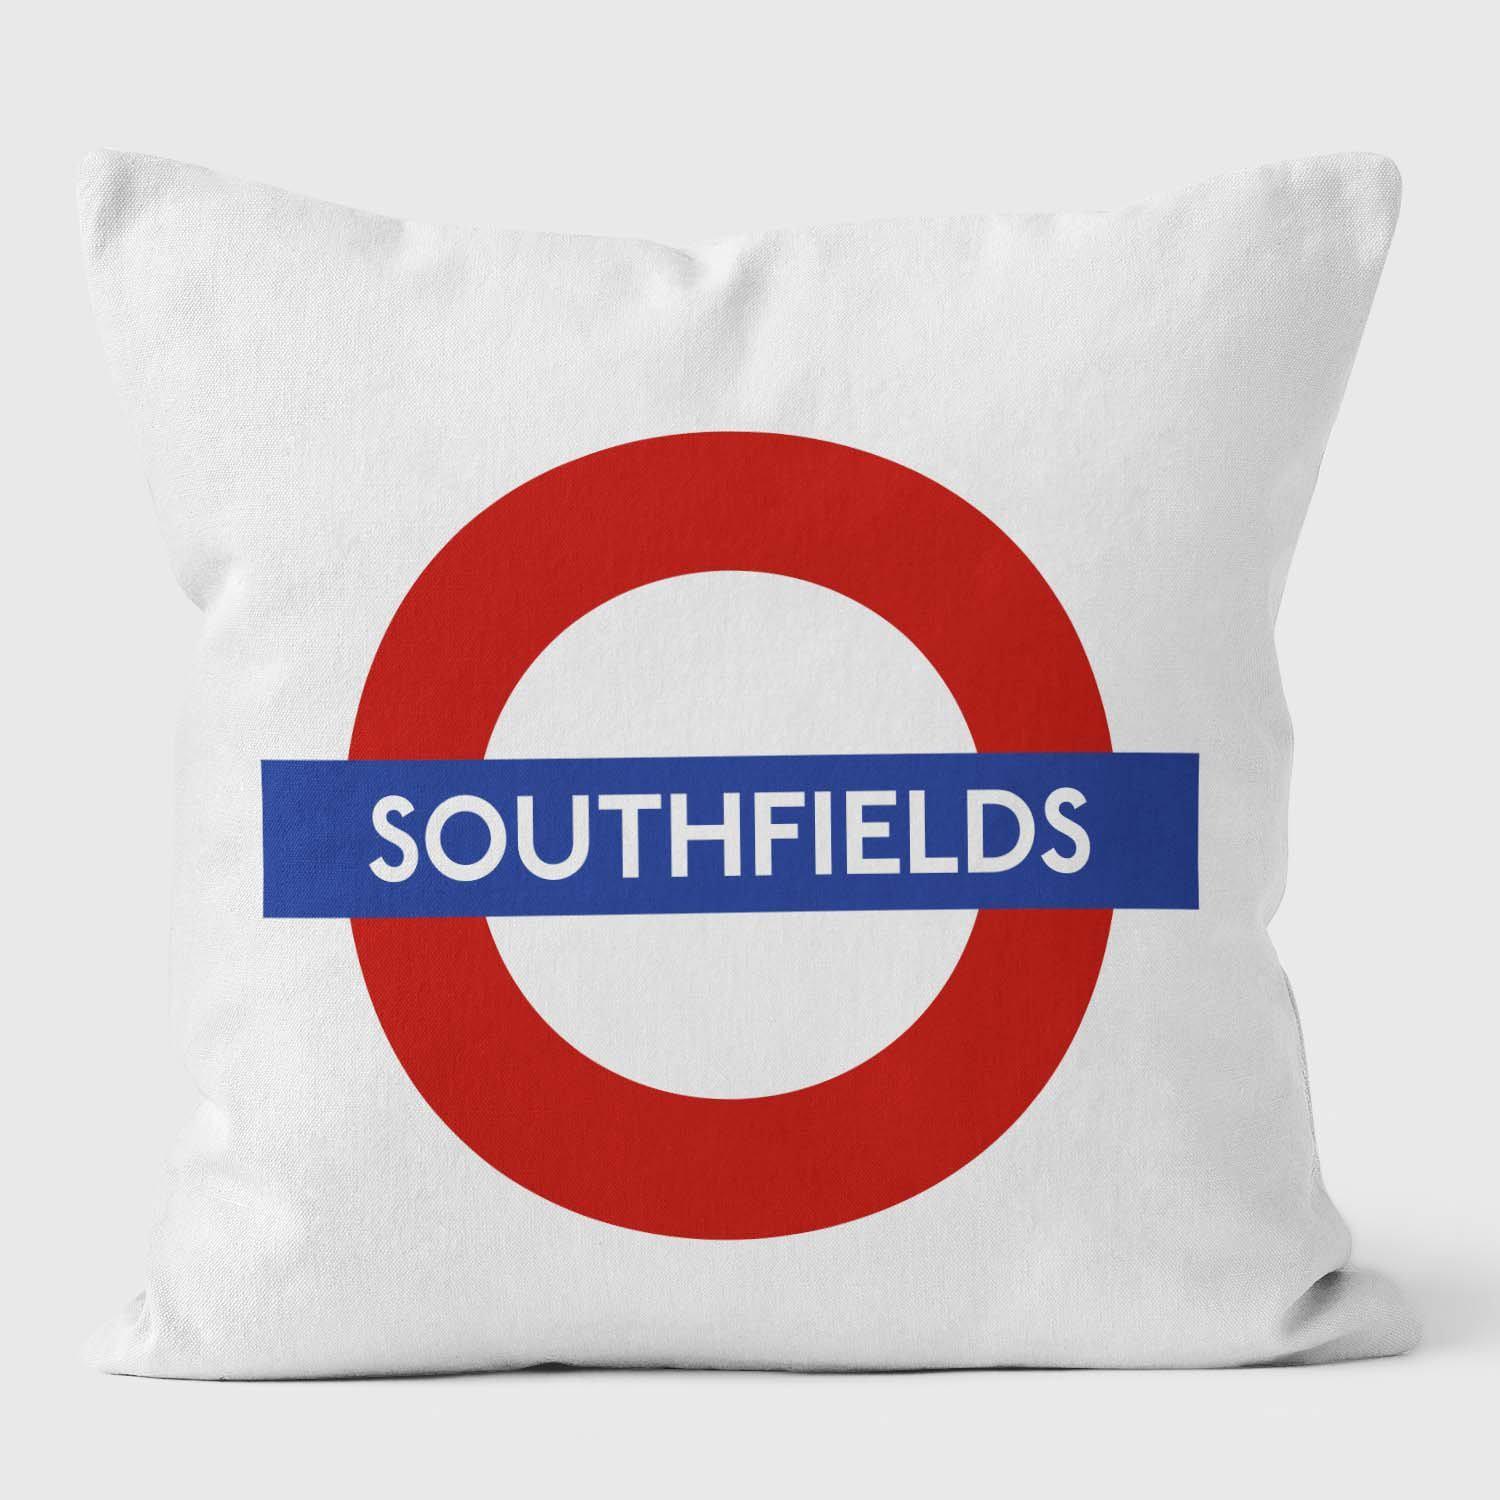 Southfields London Underground Tube Station Roundel Cushion - Handmade Cushions UK - WeLoveCushions